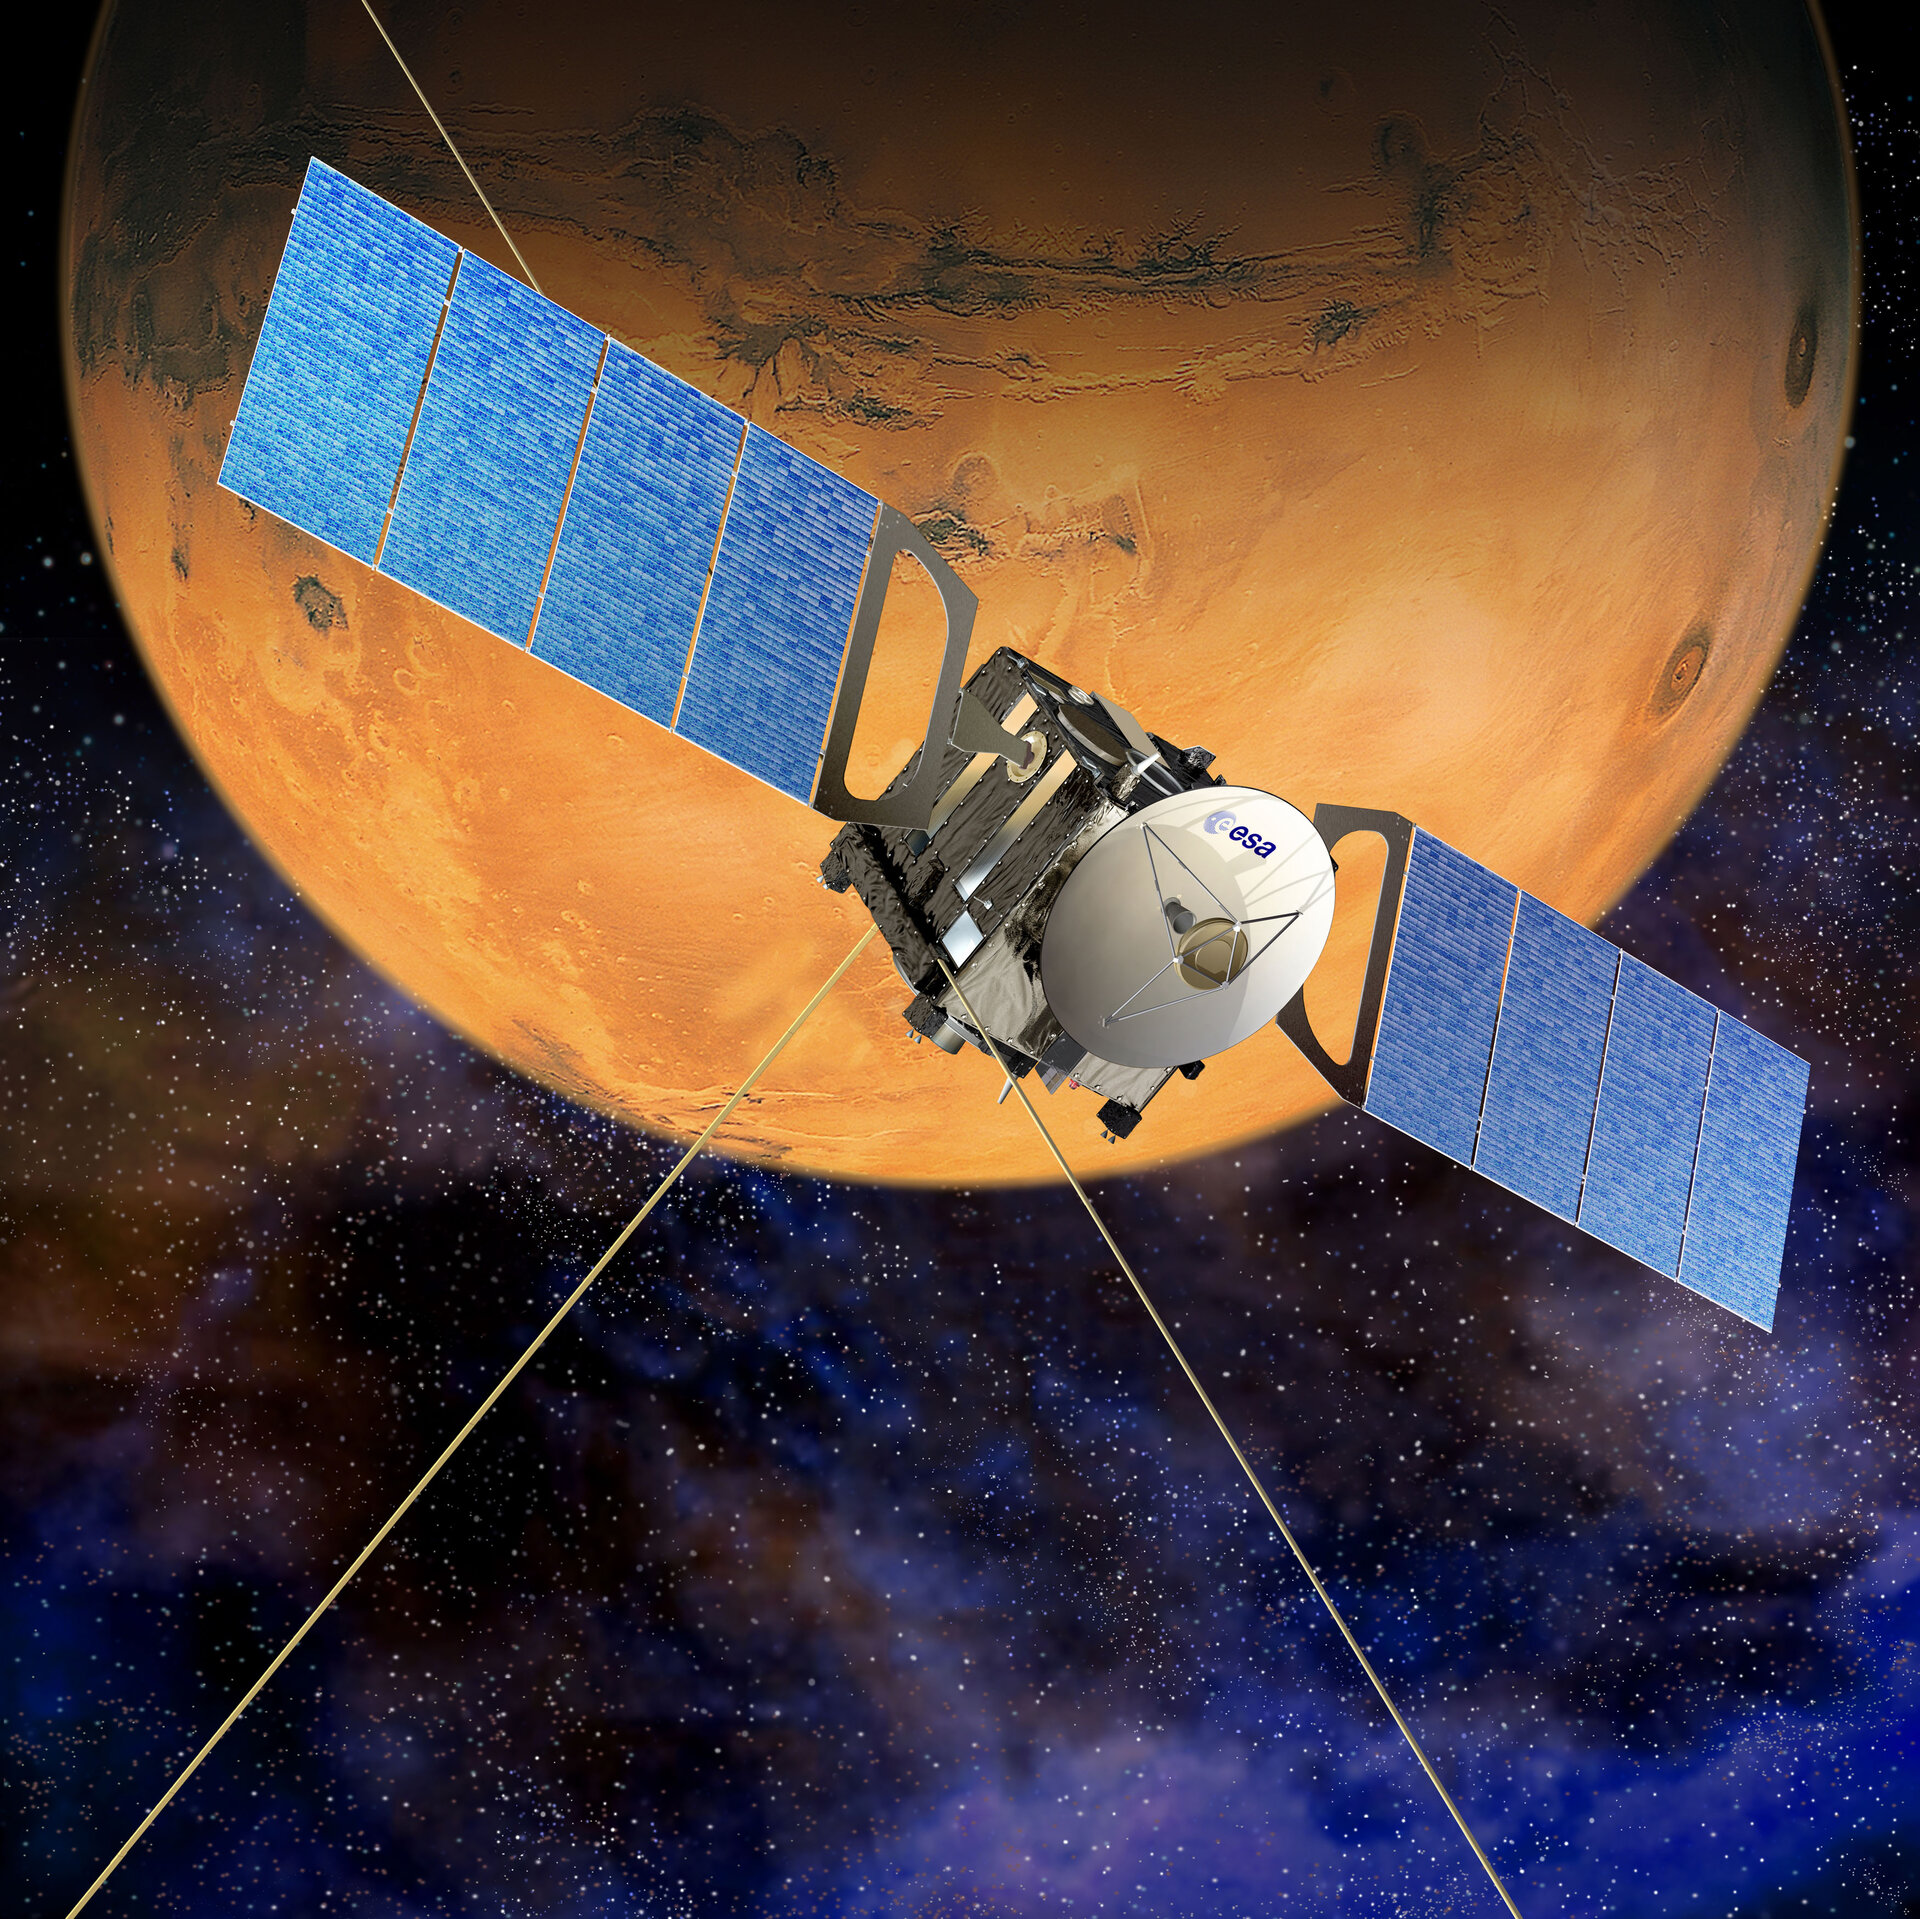 Artist's view of Mars Express in orbit